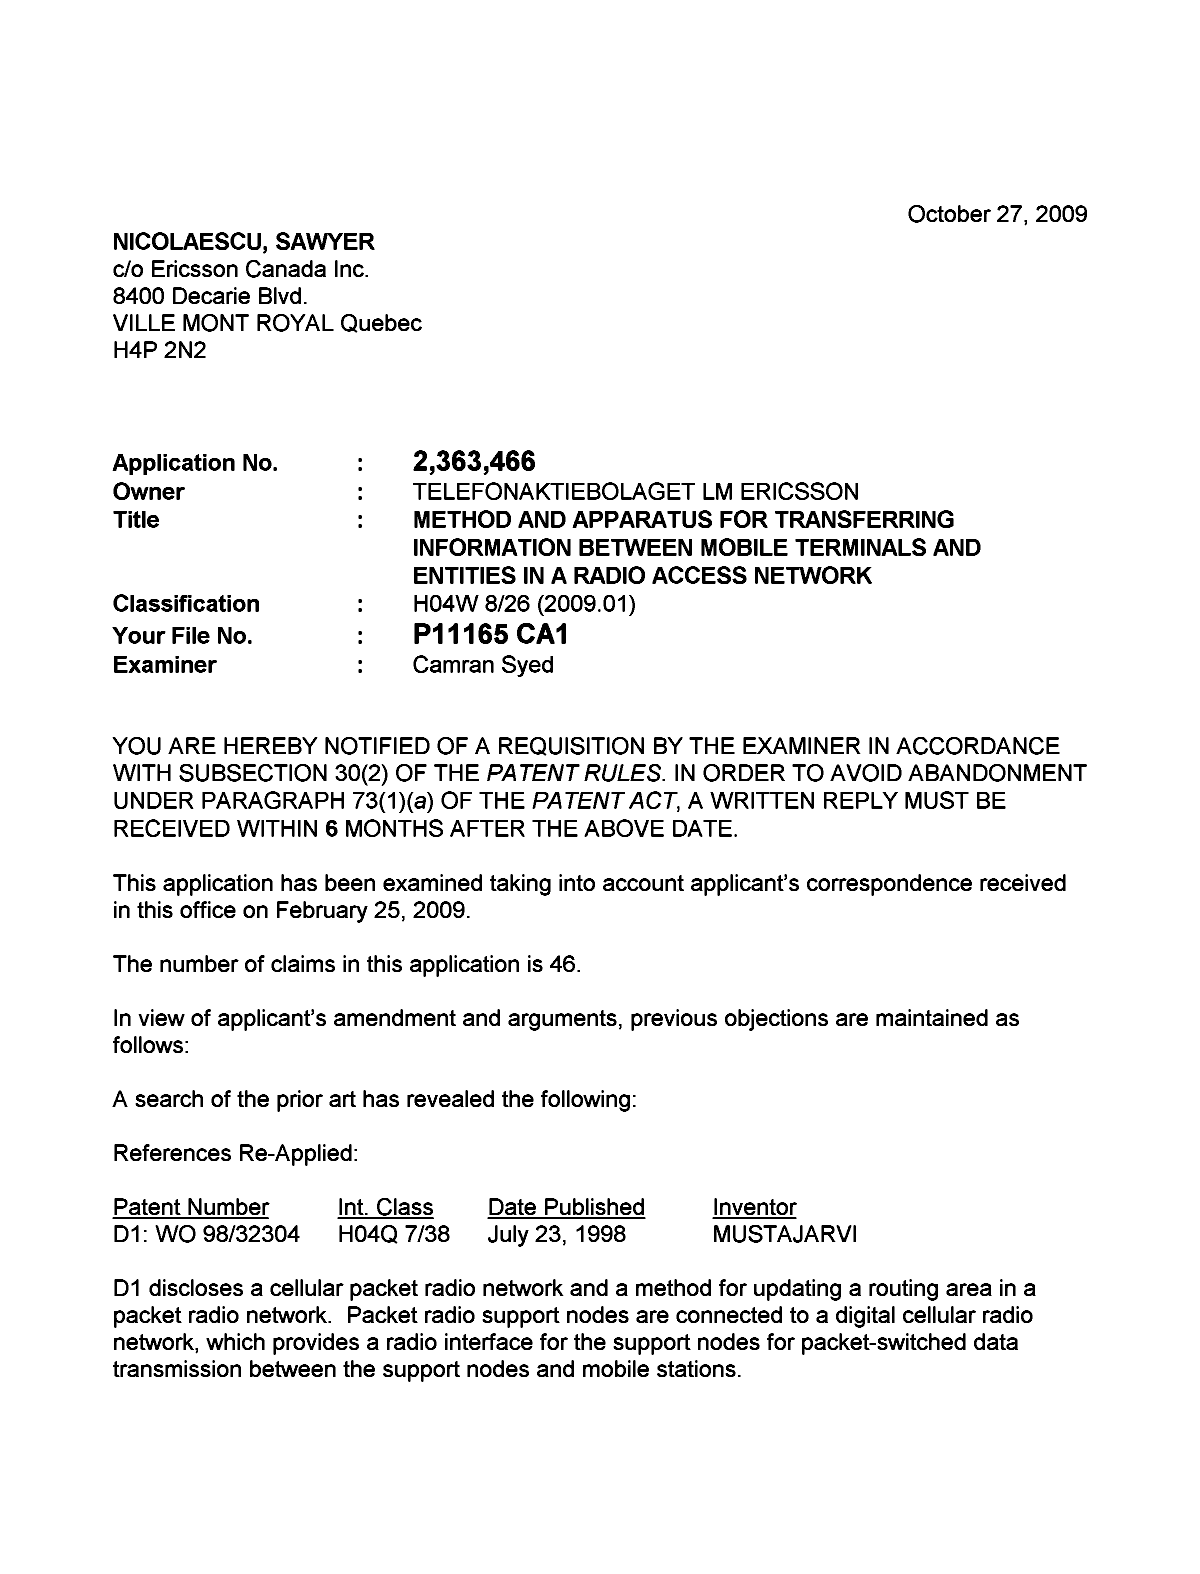 Document de brevet canadien 2363466. Poursuite-Amendment 20091027. Image 1 de 3